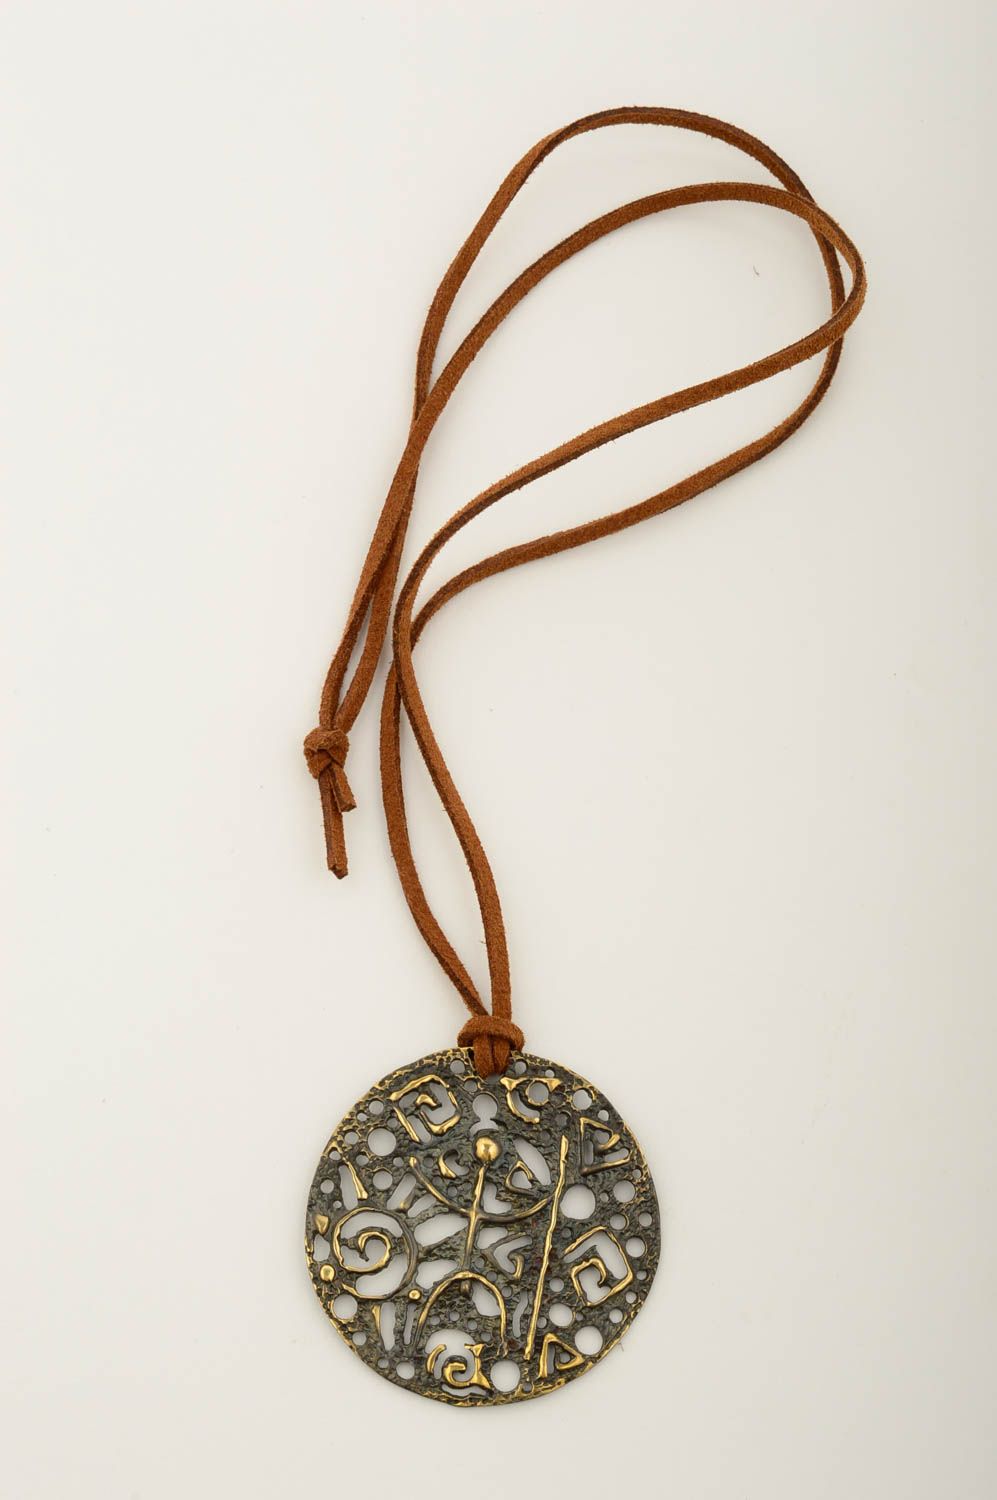 Handmsde copper pendant copper jewelry metal pendant fashion accessories photo 3